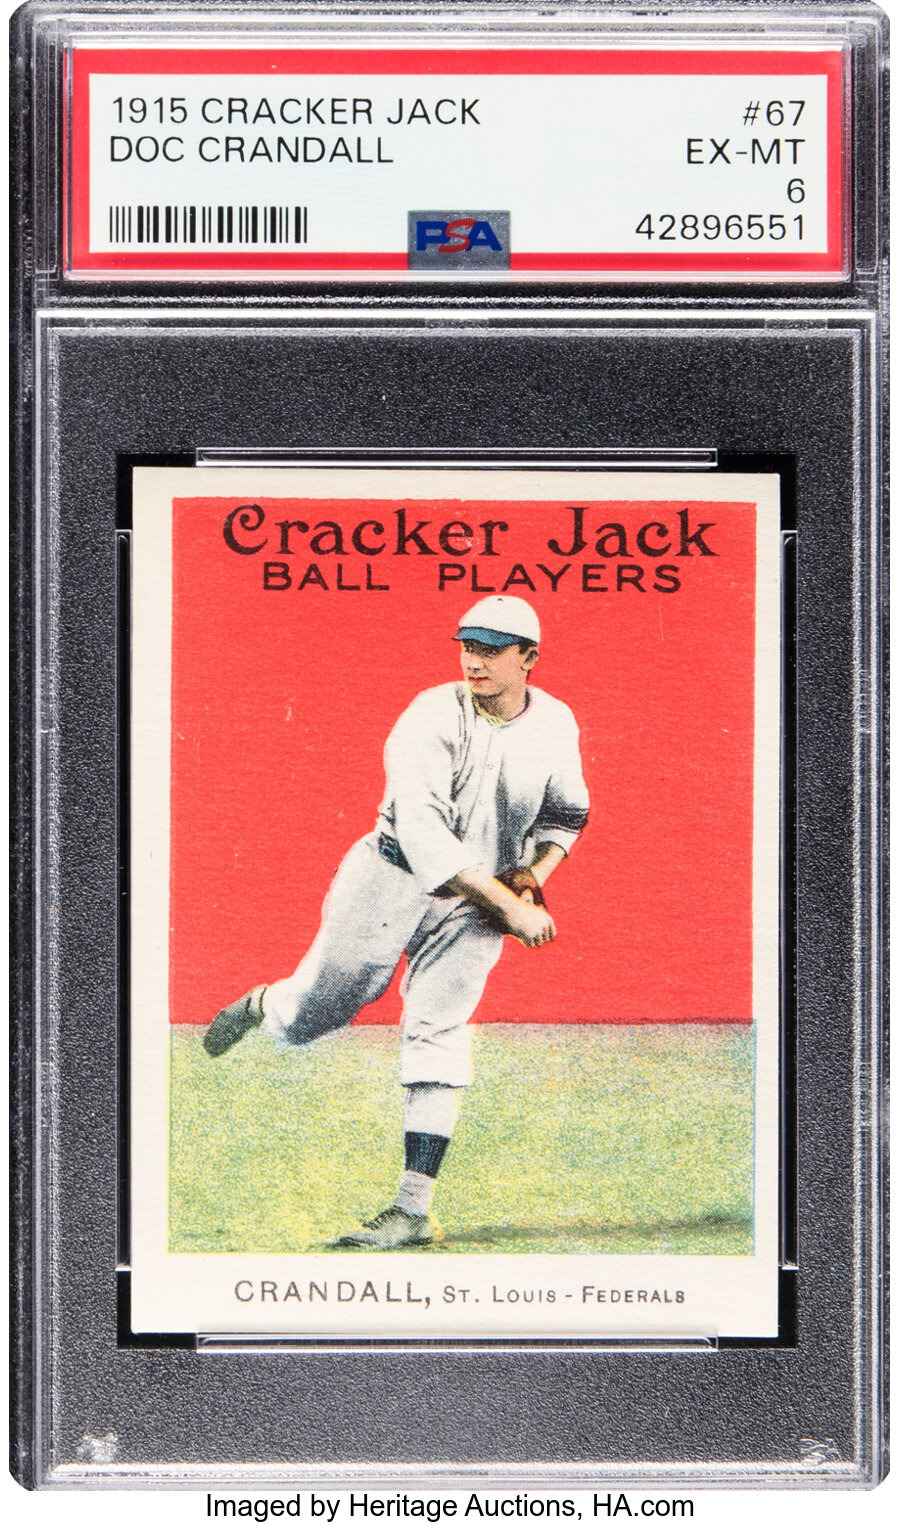 1915 Cracker Jack Doc Crandall #67 PSA EX-MT 6